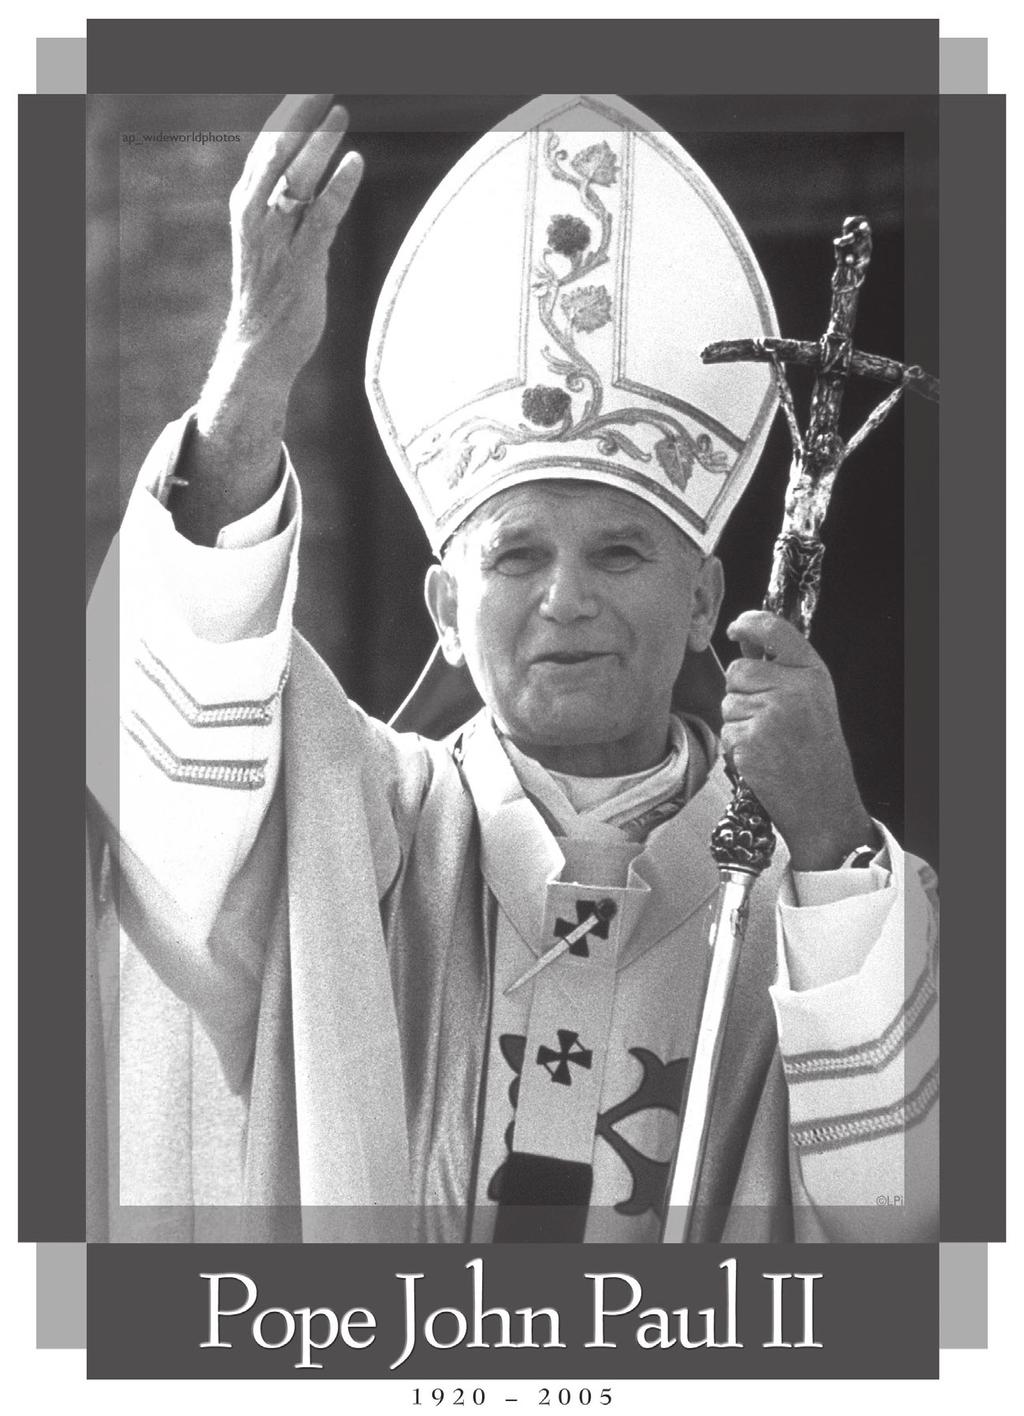 , Bishop, Diocese of Fairbanks, 1968-1984, greets Pope John Paul II on his